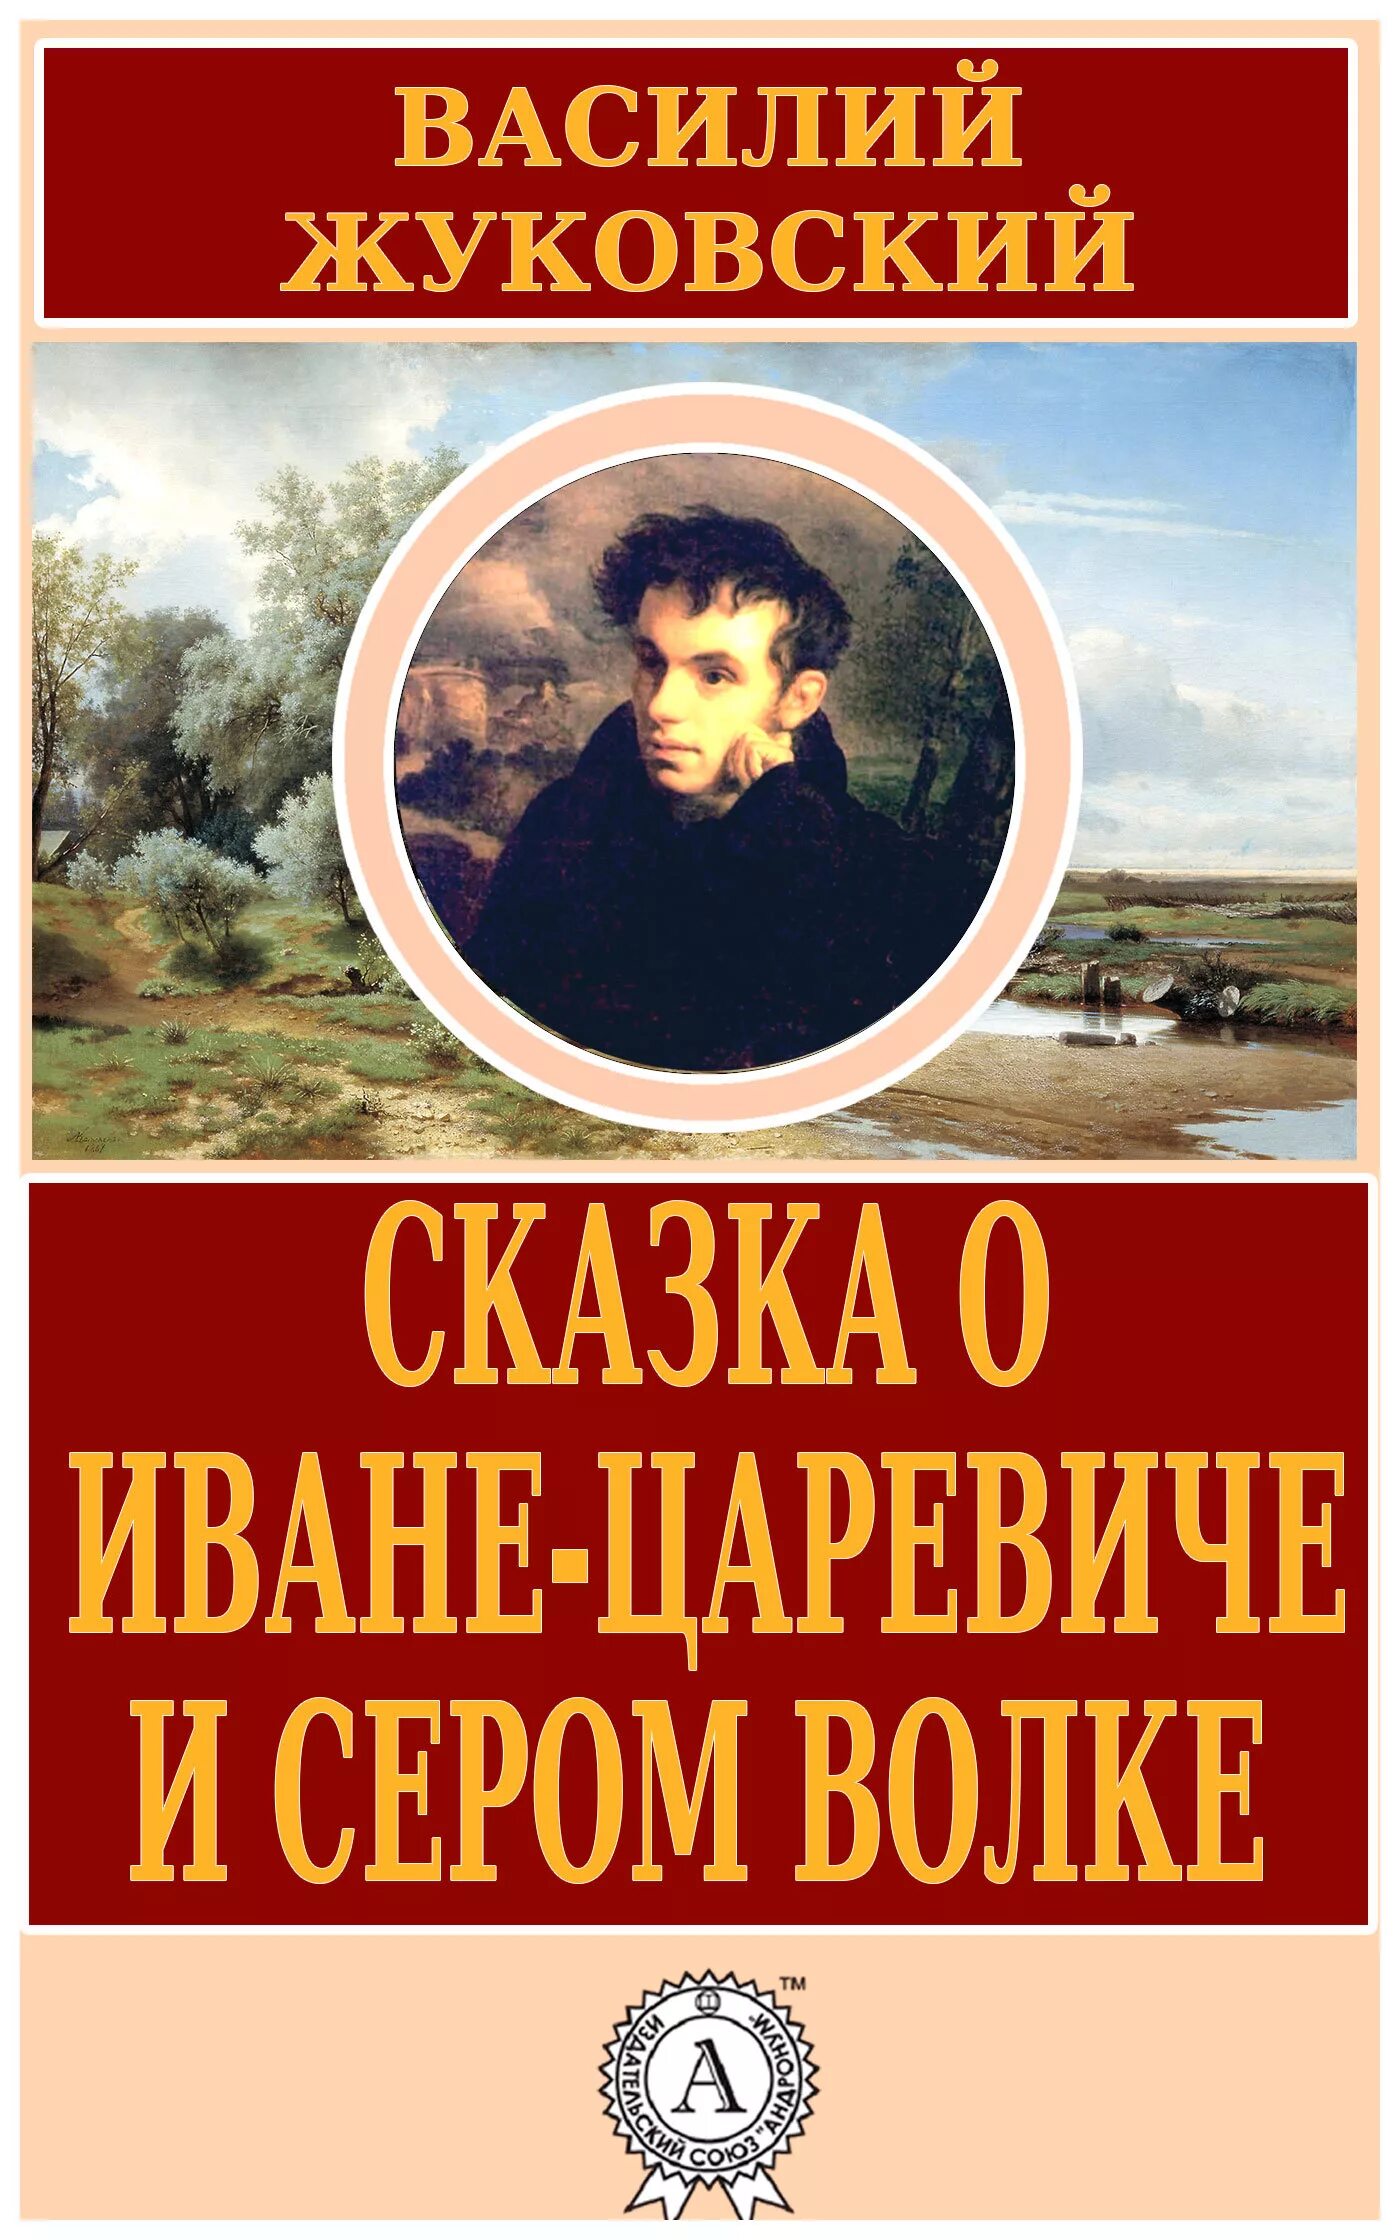 Книги Жуковского Василия Андреевича. Жуковский написал произведение